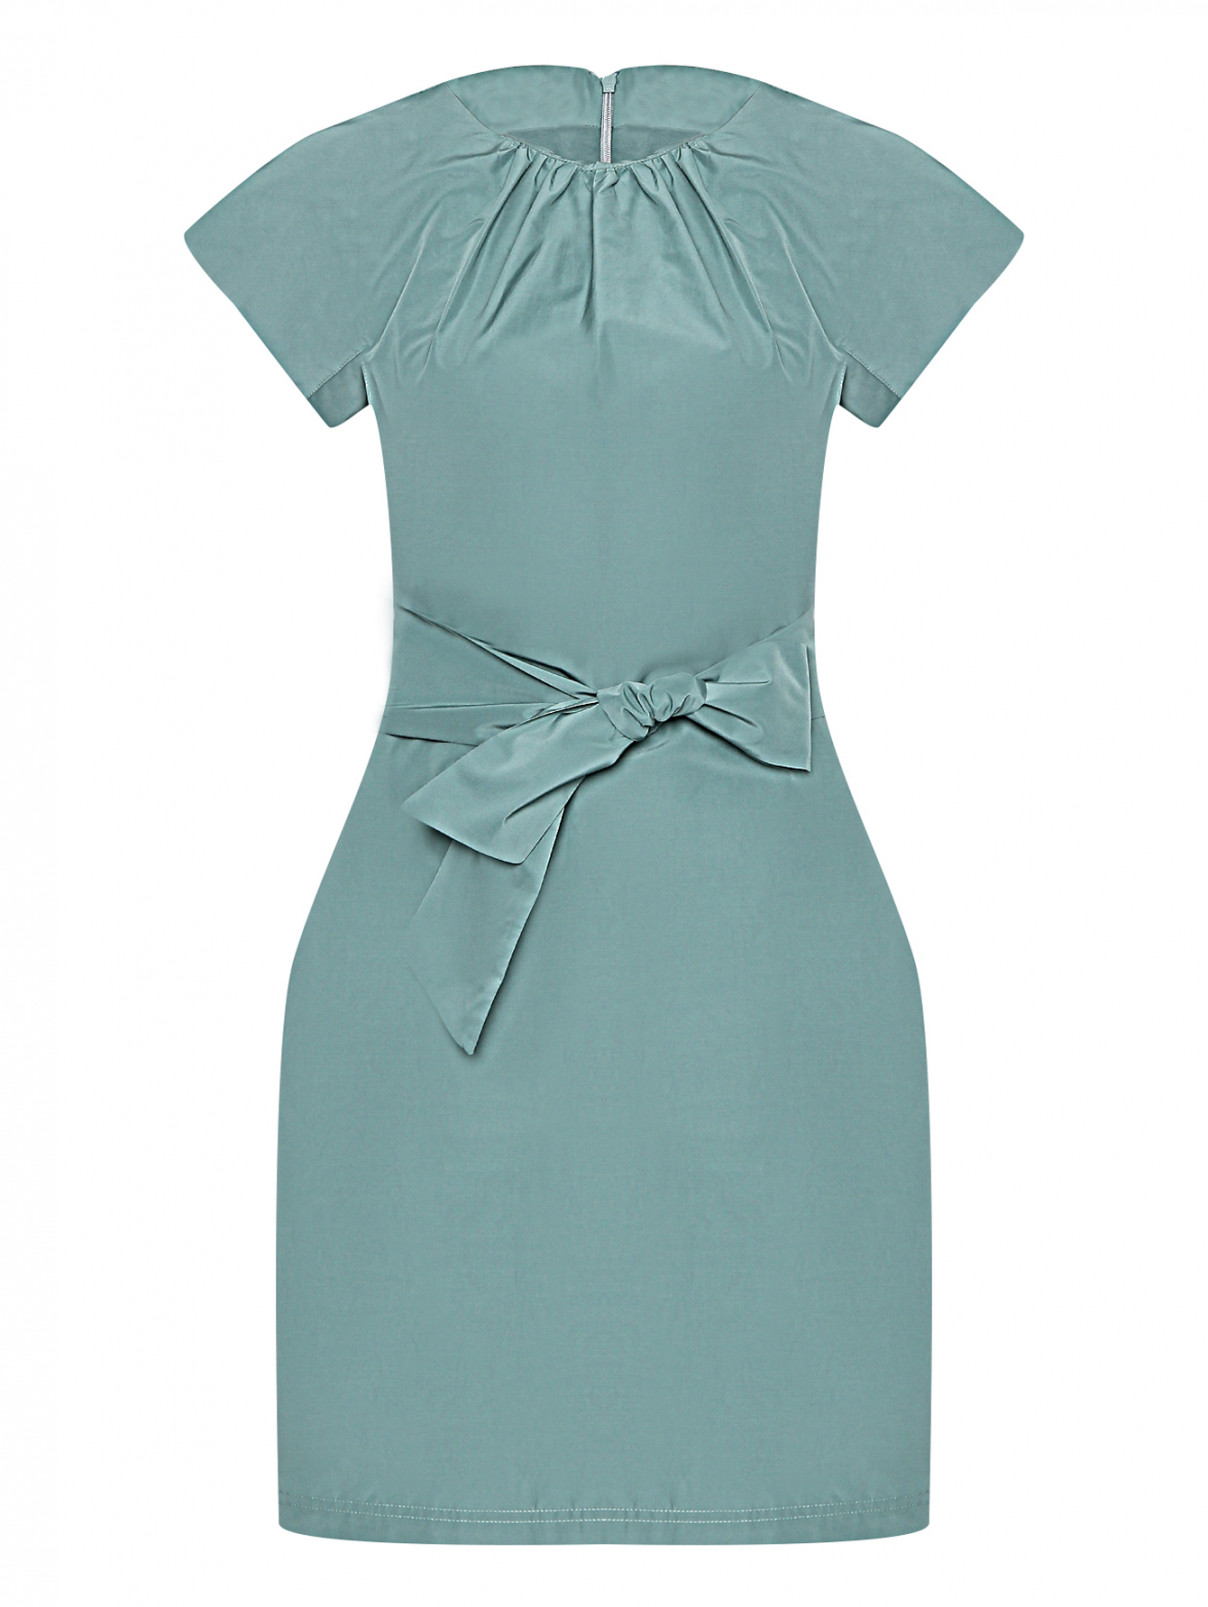 Платье с поясом Weekend Max Mara  –  Общий вид  – Цвет:  Зеленый